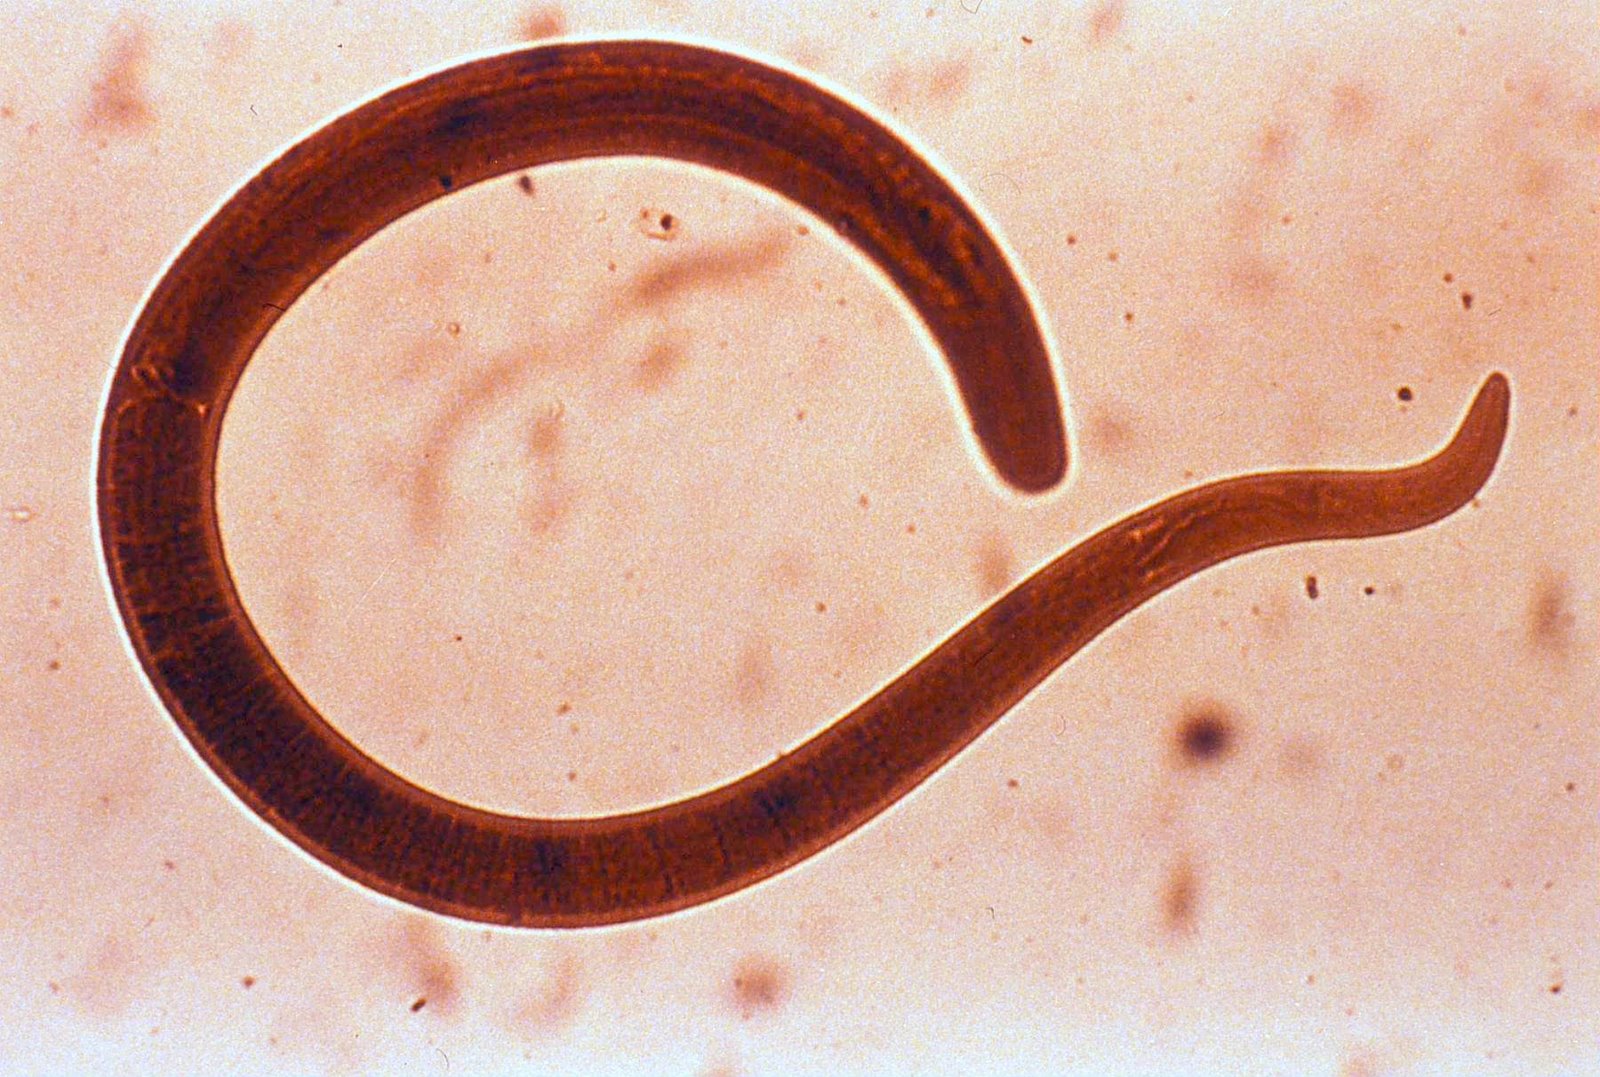 Tapeworms: Ihe na-ebute ọrịa na ụzọ ọgwụgwọ - Zụlite onwe gị